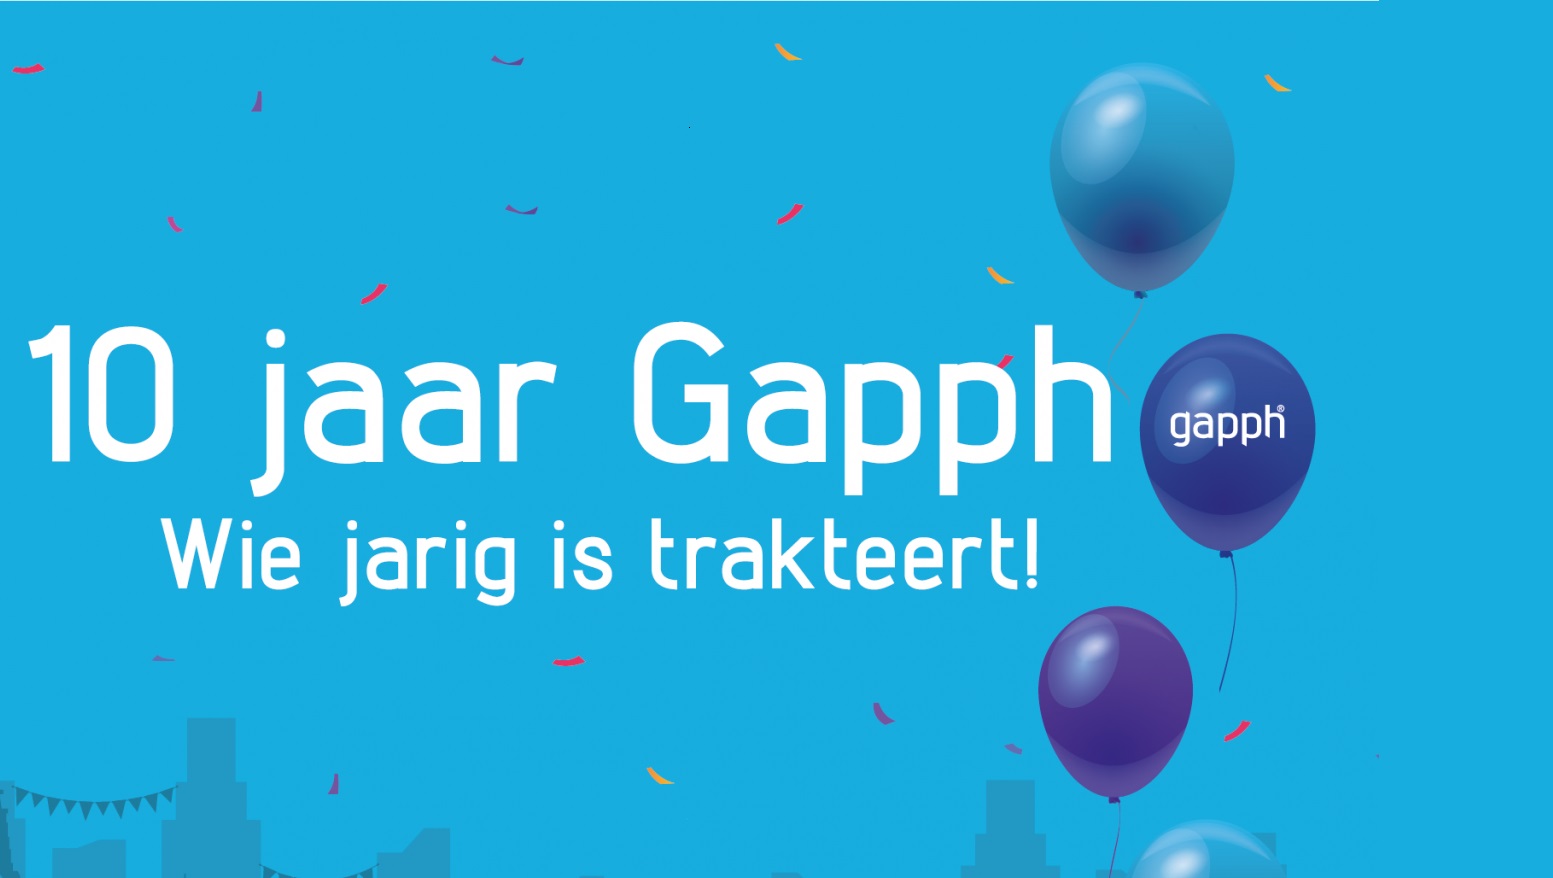 Gapph bestaat 10 jaar: wie jarig is trakteert!